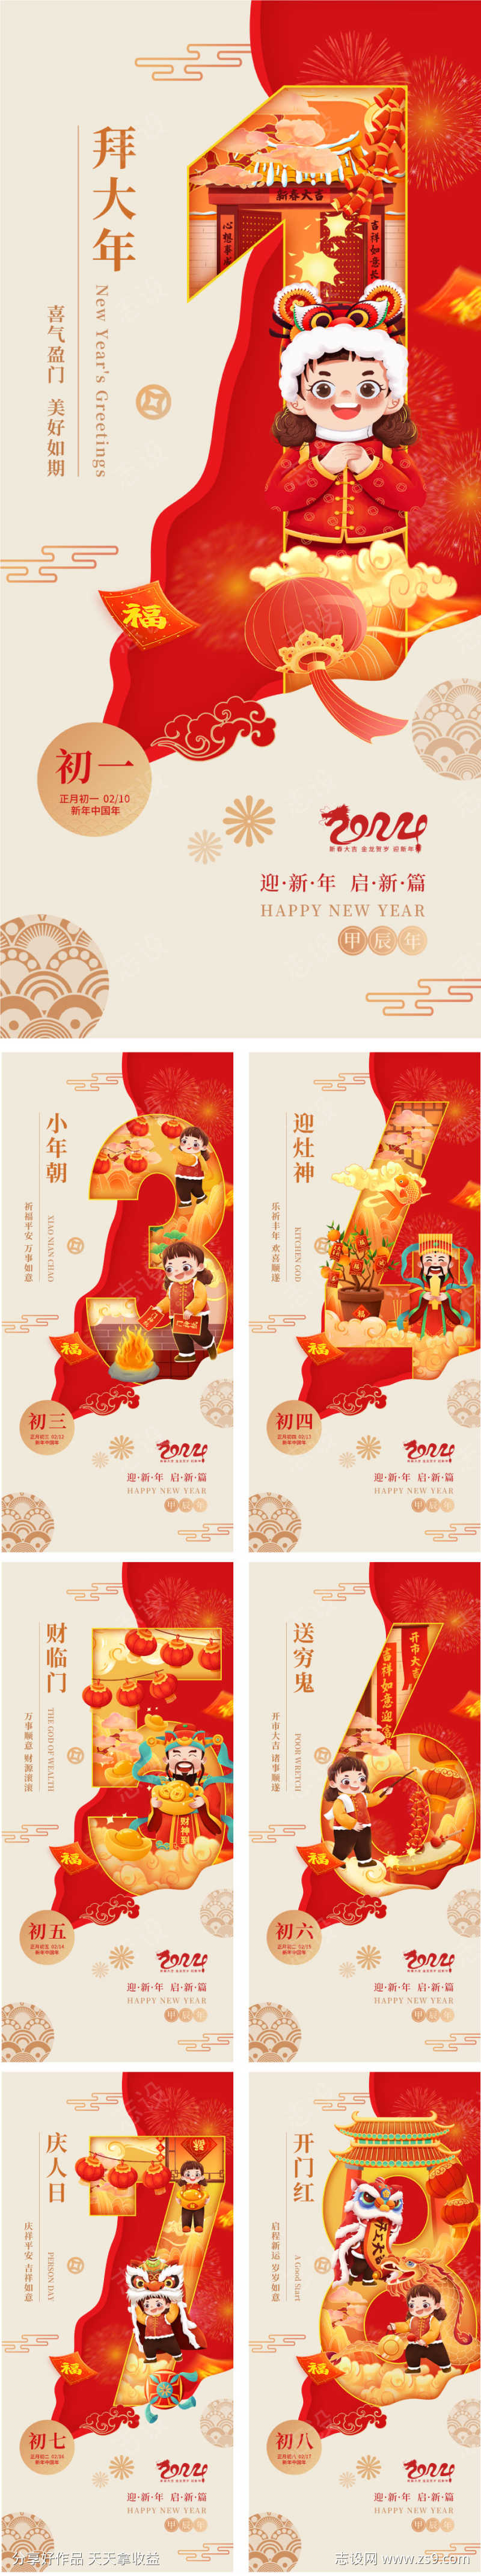 龙年春节朋友圈系列海报